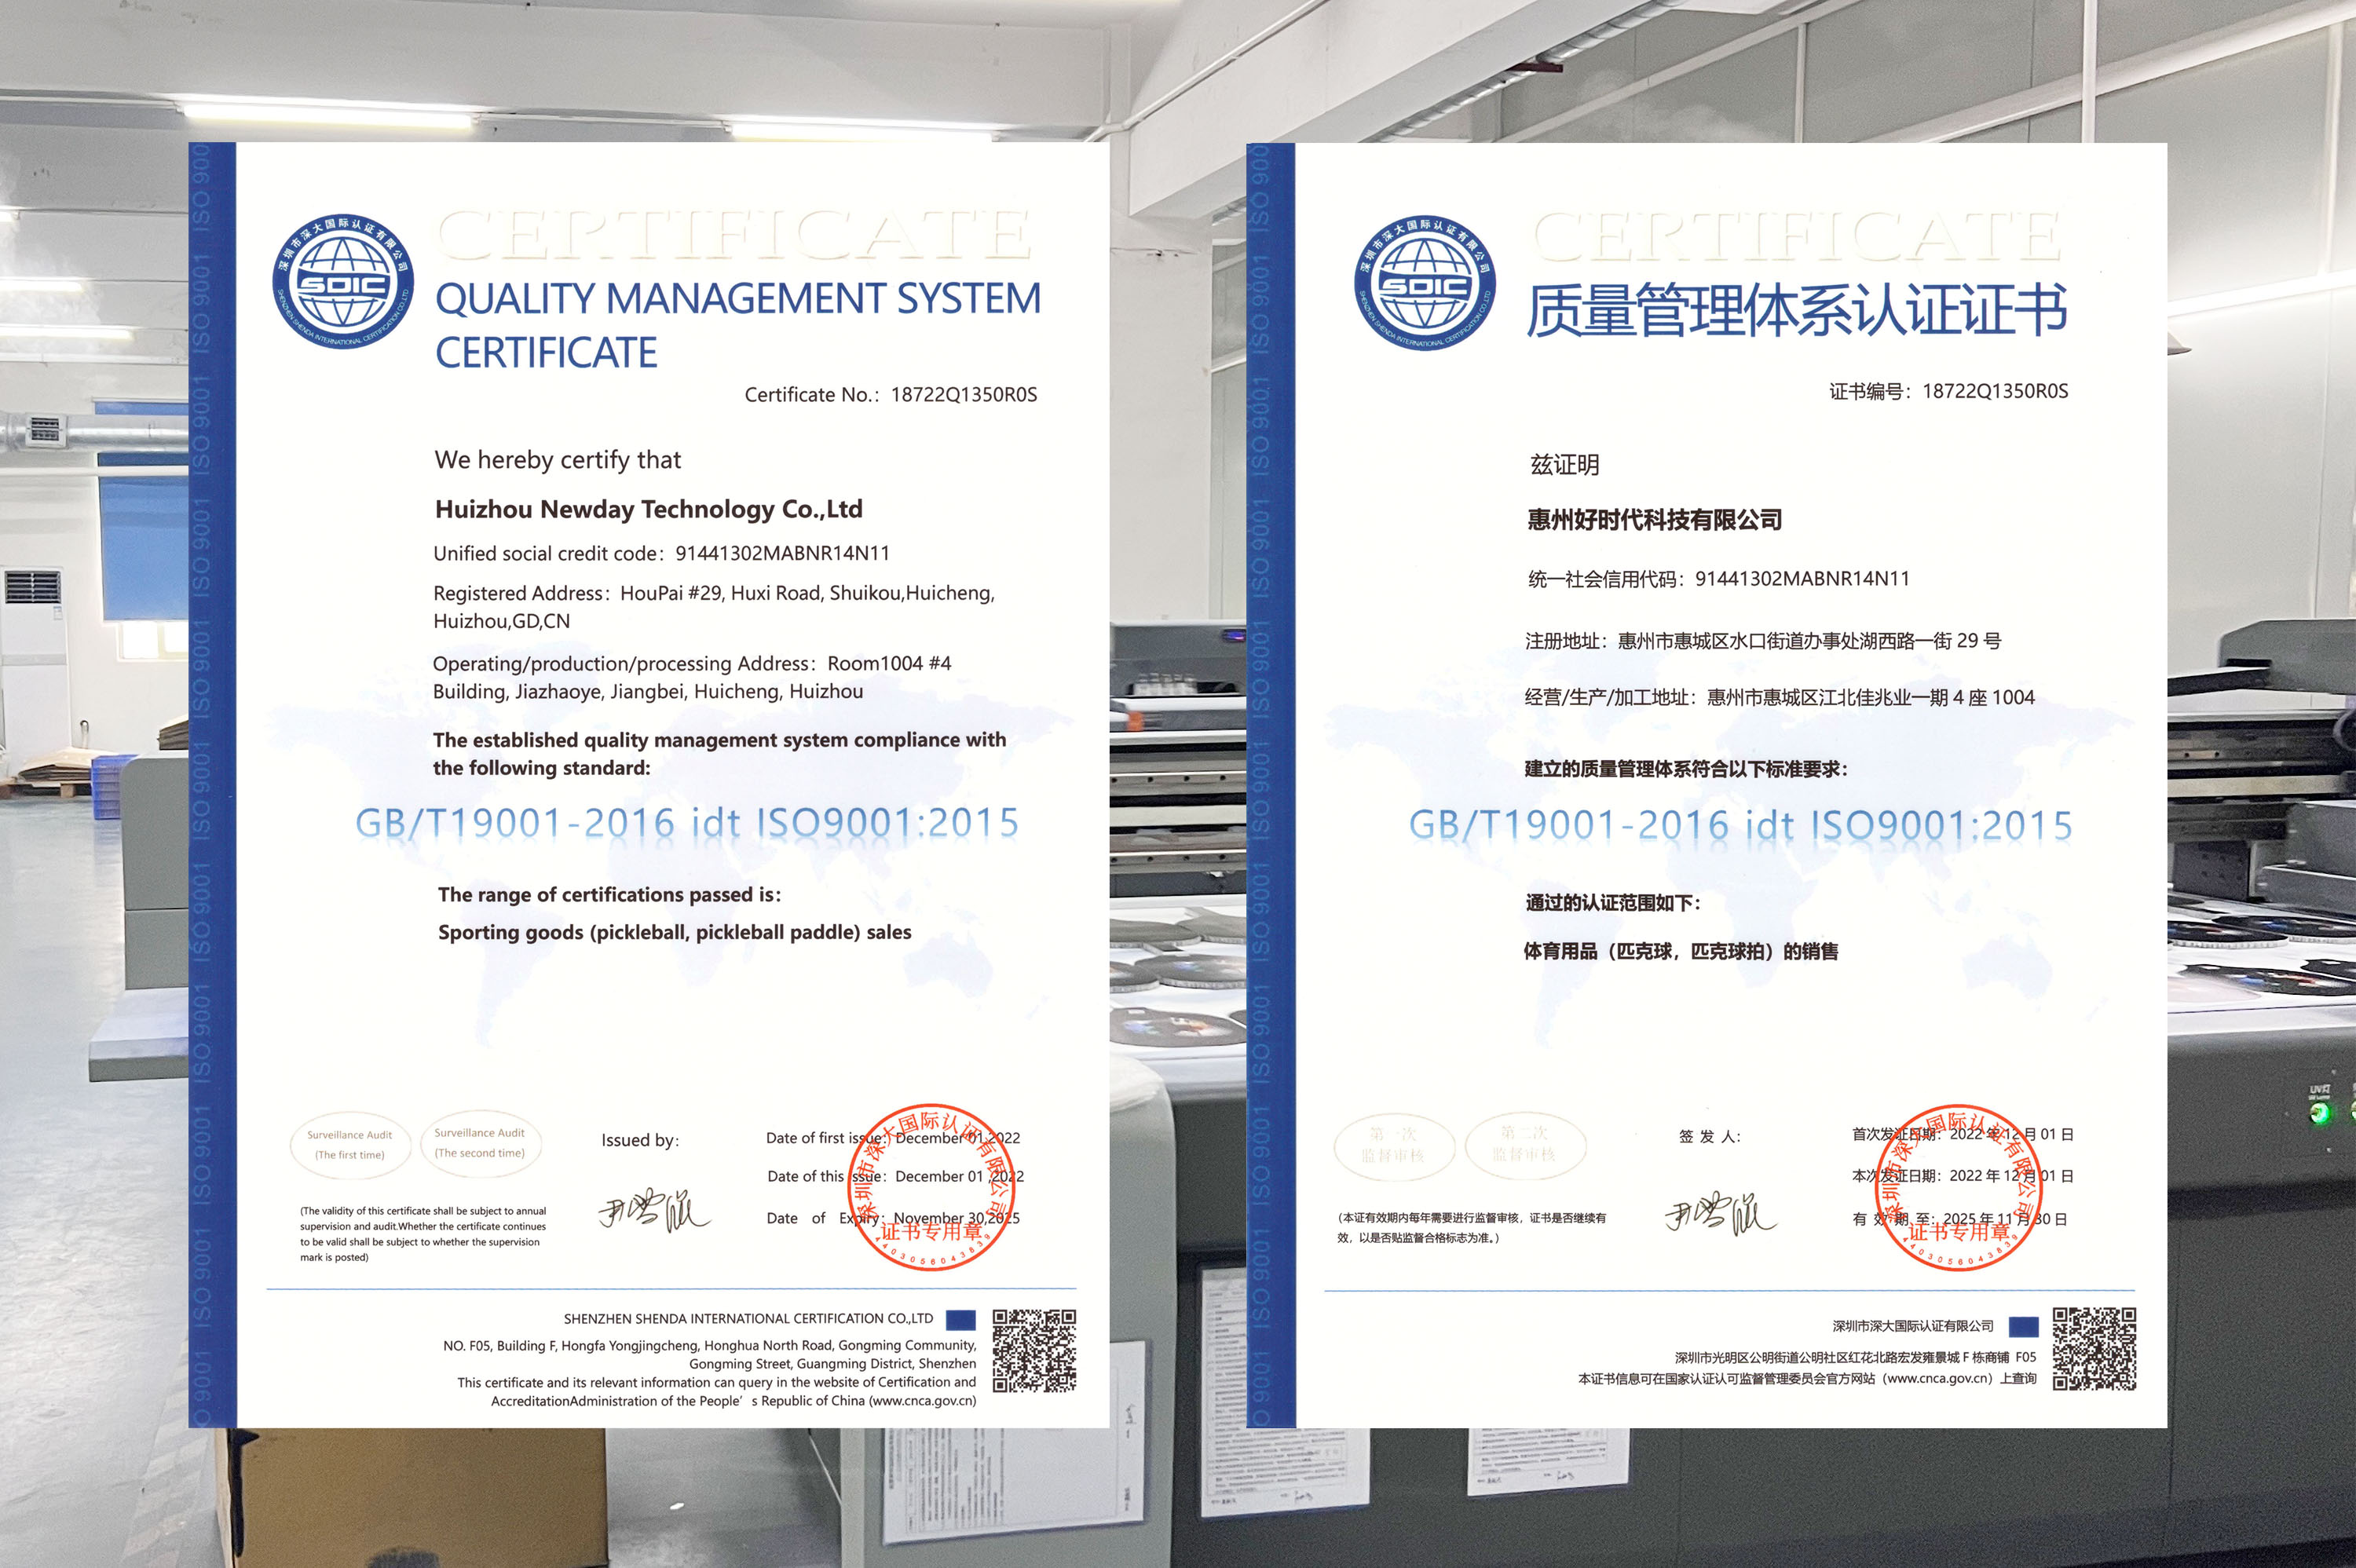 Certificado ISO9001, nós conseguimos!